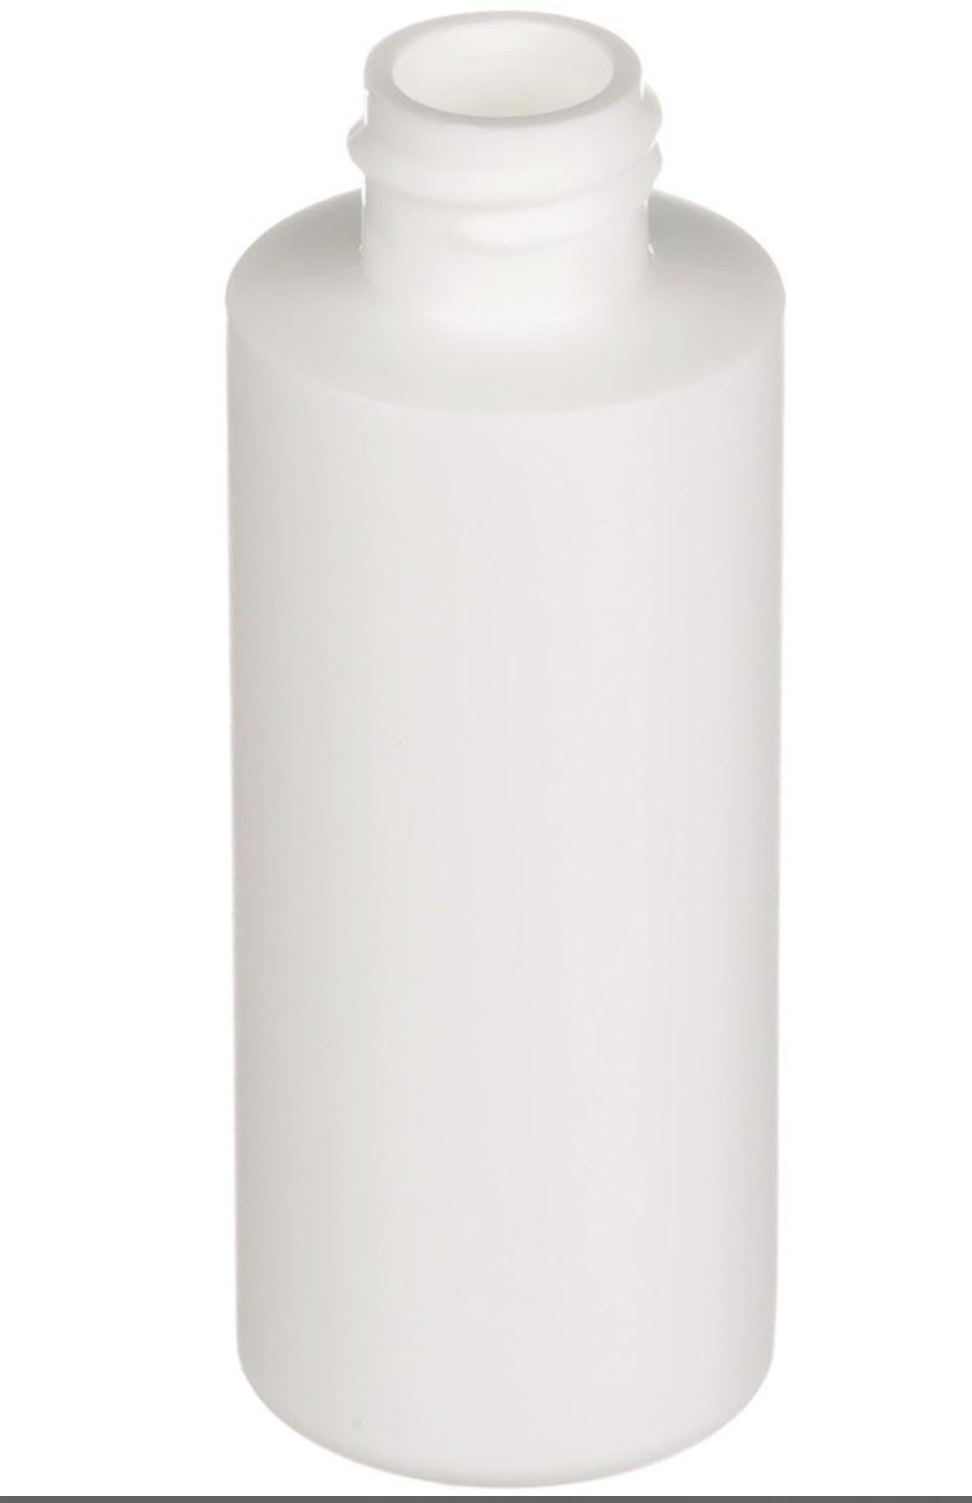 One dozen 2 oz White HDPE Plastic Cylinder Round Bottle - 24-410 Neck Finish - INCLUDES LIDS